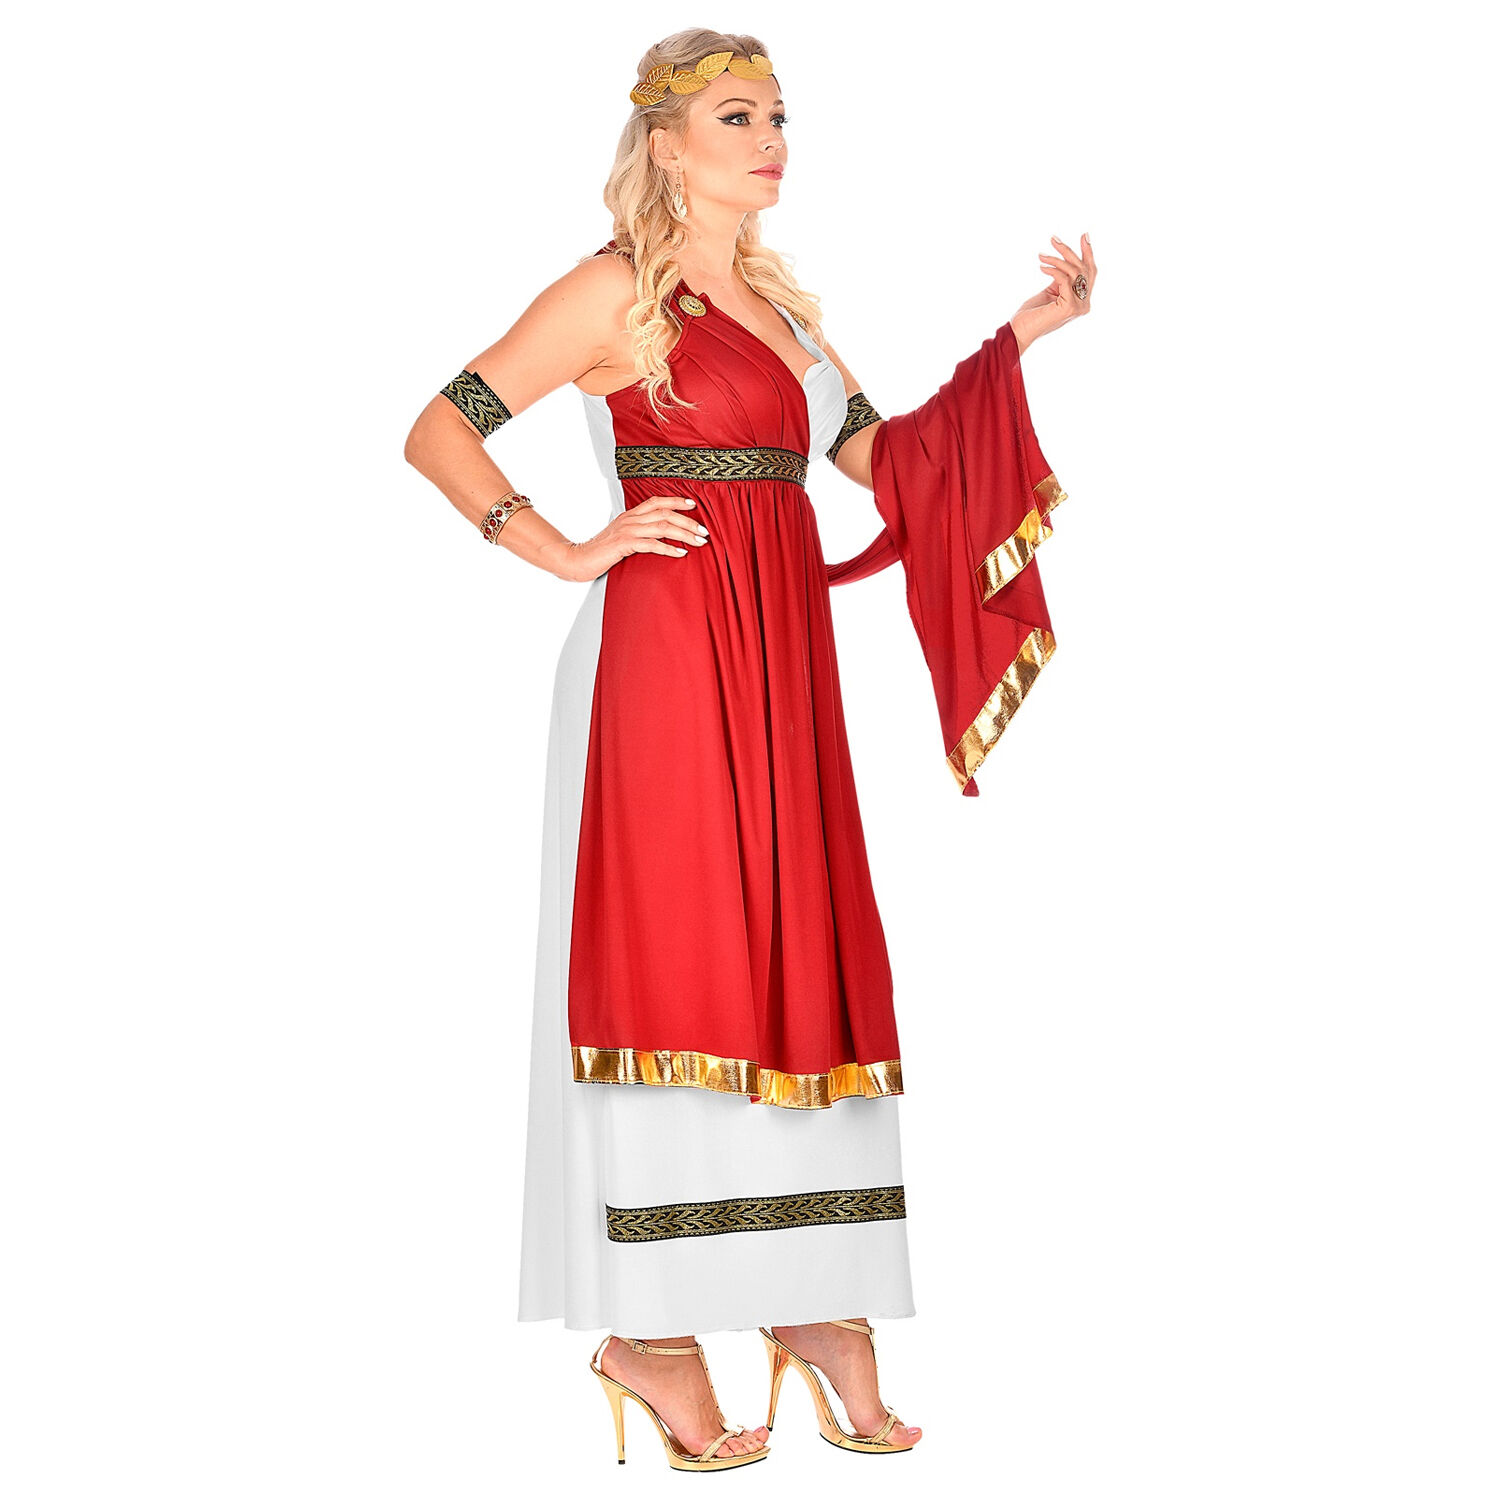 NEU Damen-Kostüm Römische Kaiserin, Kleid mit Umhang, Armbändern und Lorbeerkranz, Gr. S Bild 4